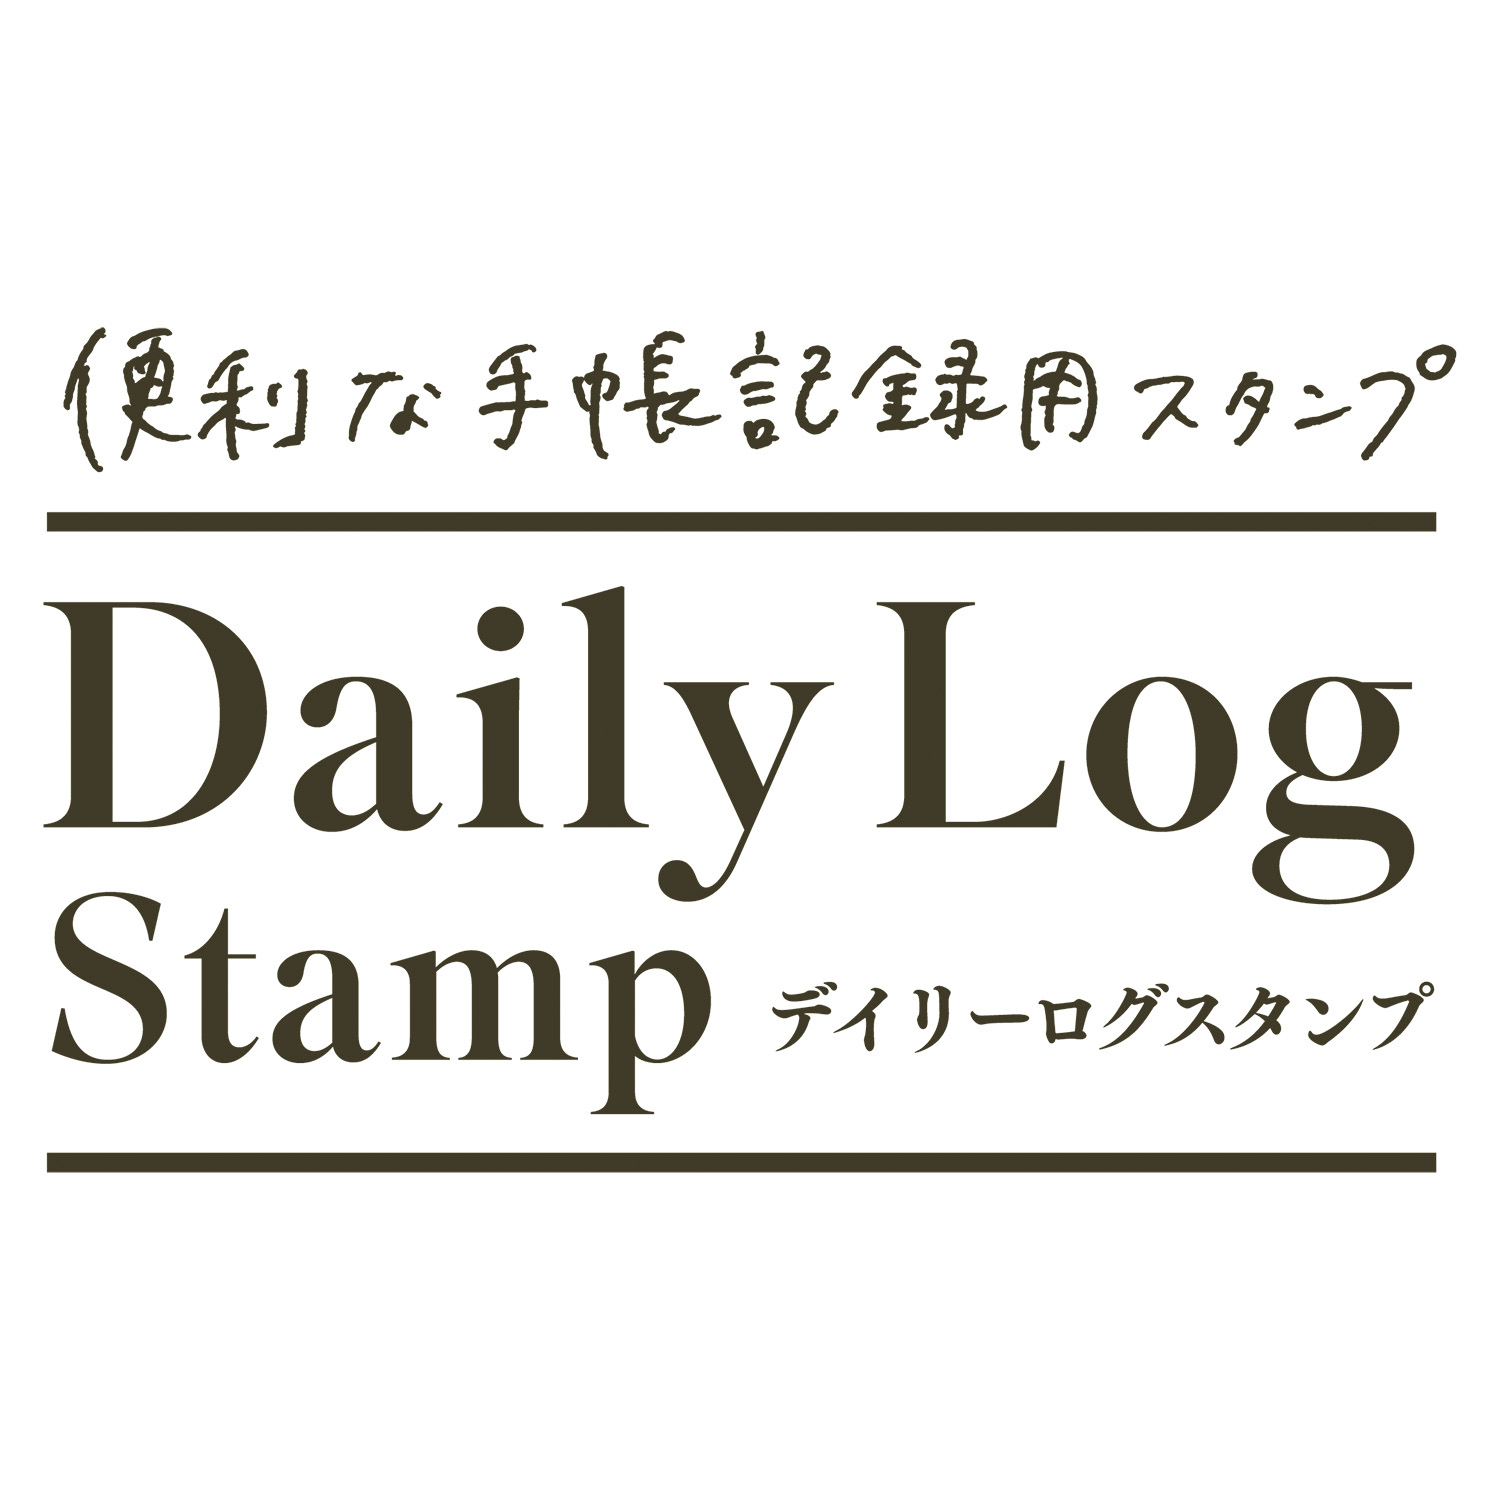 デイリーログスタンプ マスター部 03 天気と曜日|GDL-2727M/H-03|商品